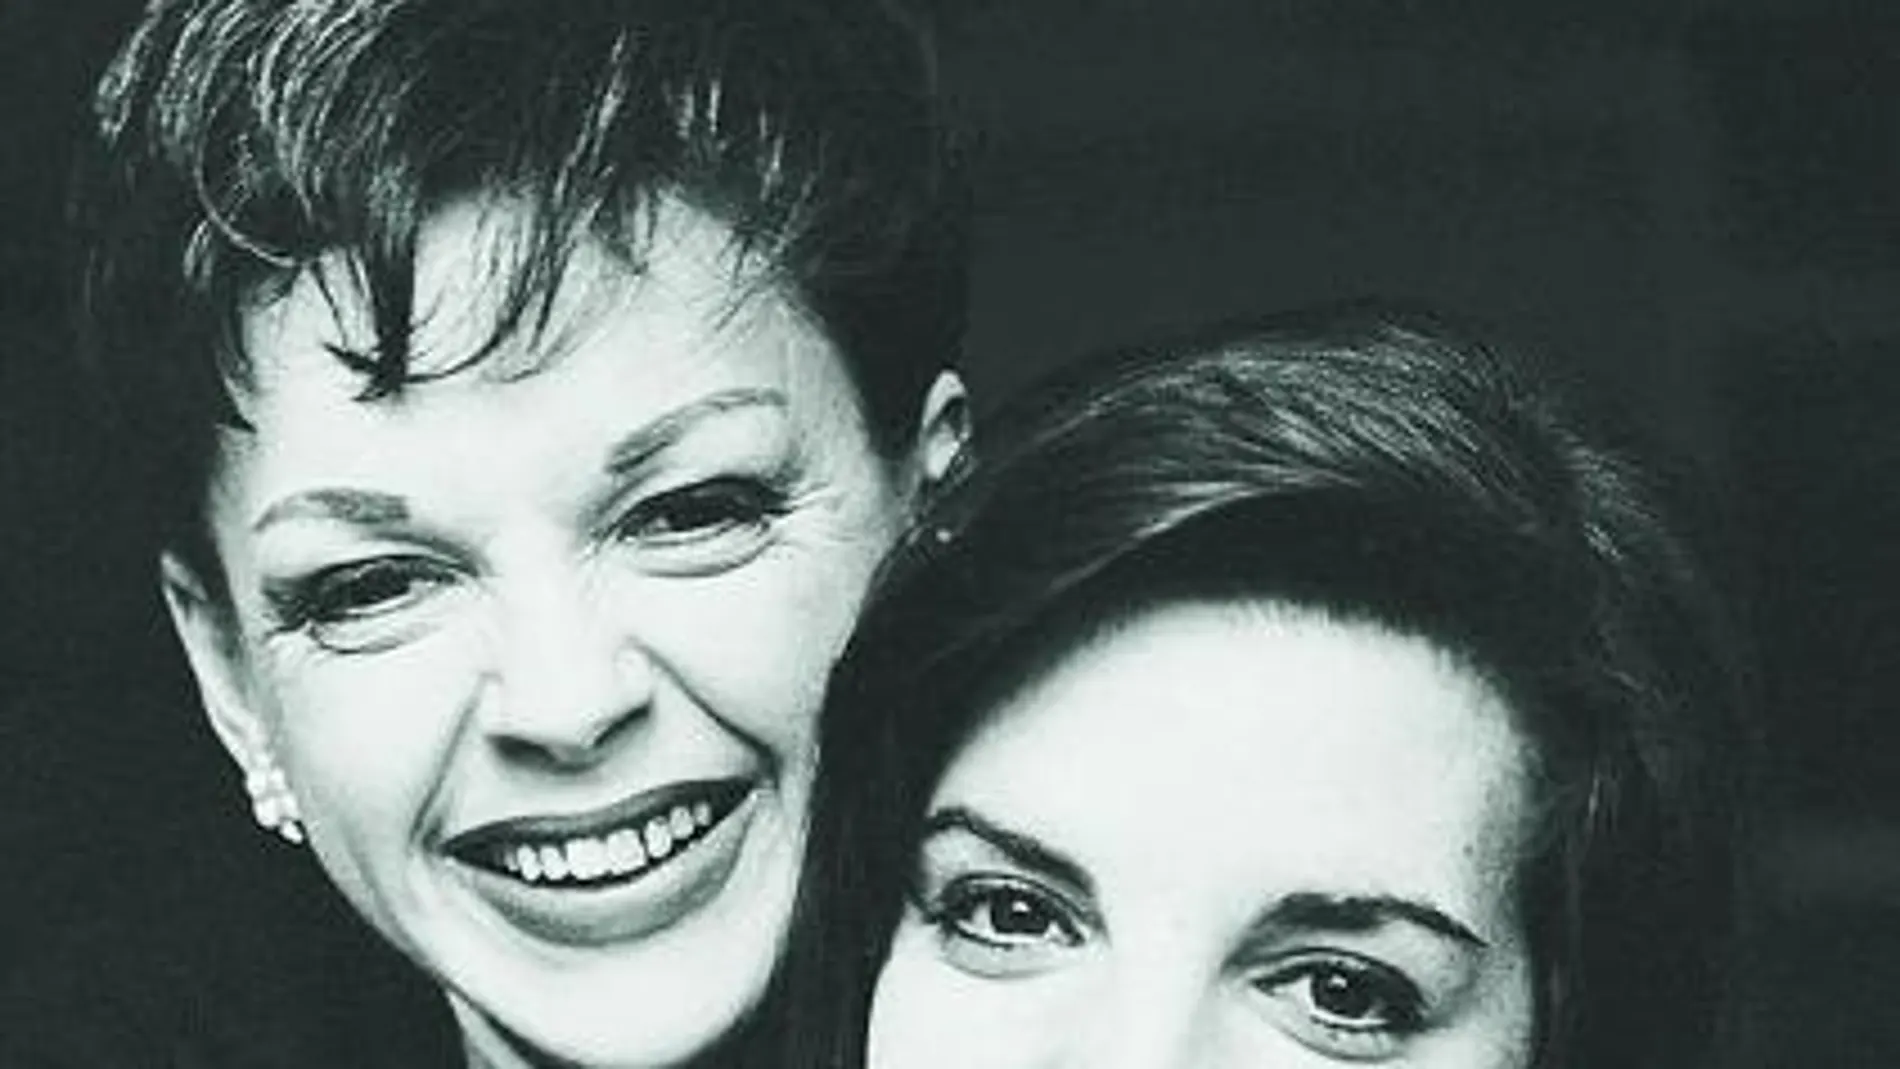 Judy Garland, junto a su hija, Liza Minelly, quien heredó hasta las adicciones